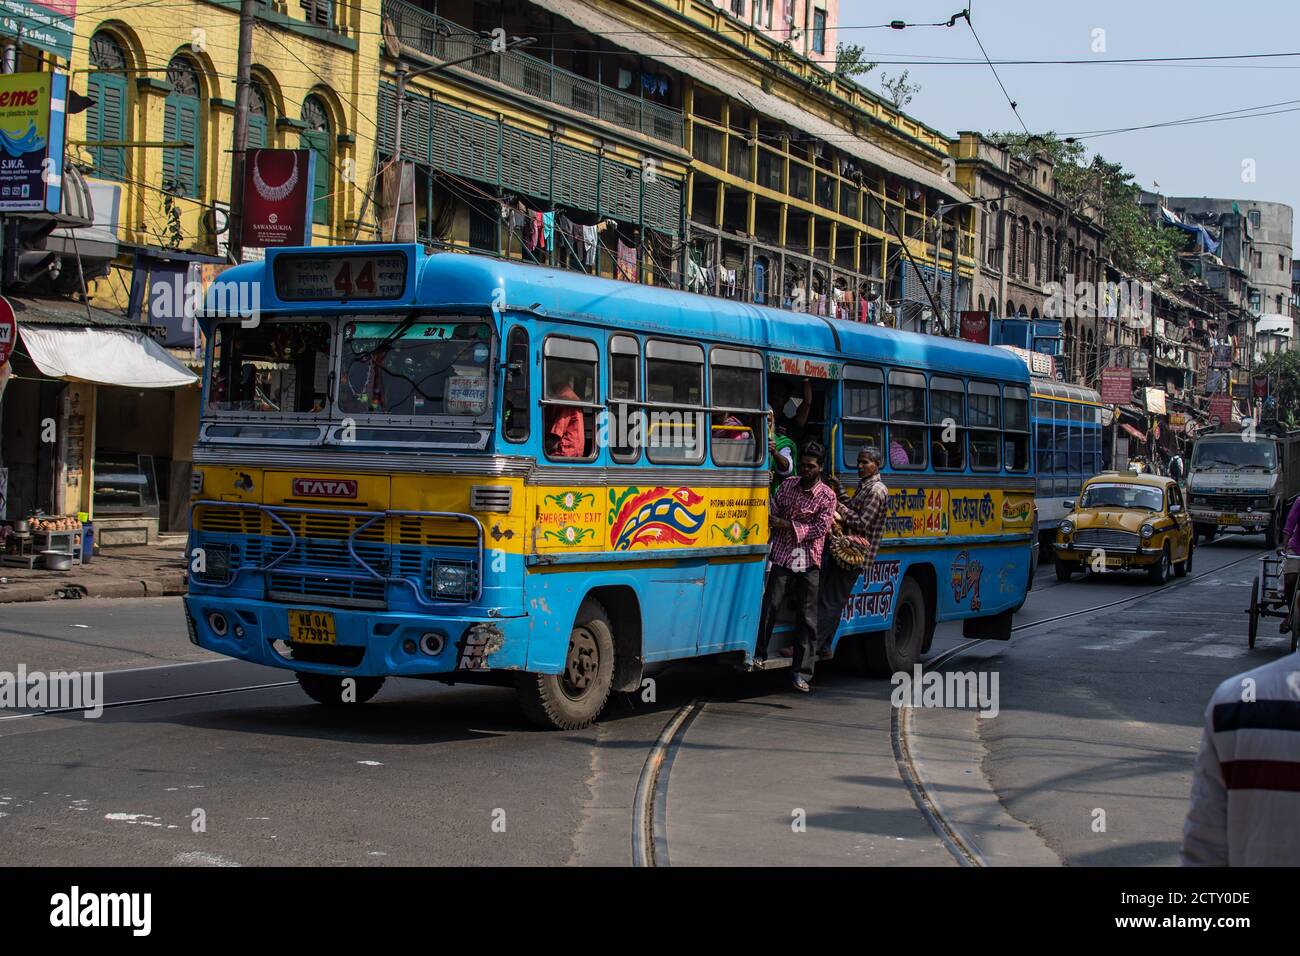 Kolkata, Inde - 2 février 2020 : un bus de transport public traditionnel bleu et jaune en circulation avec des passagers non identifiés en face d'un tramway Banque D'Images